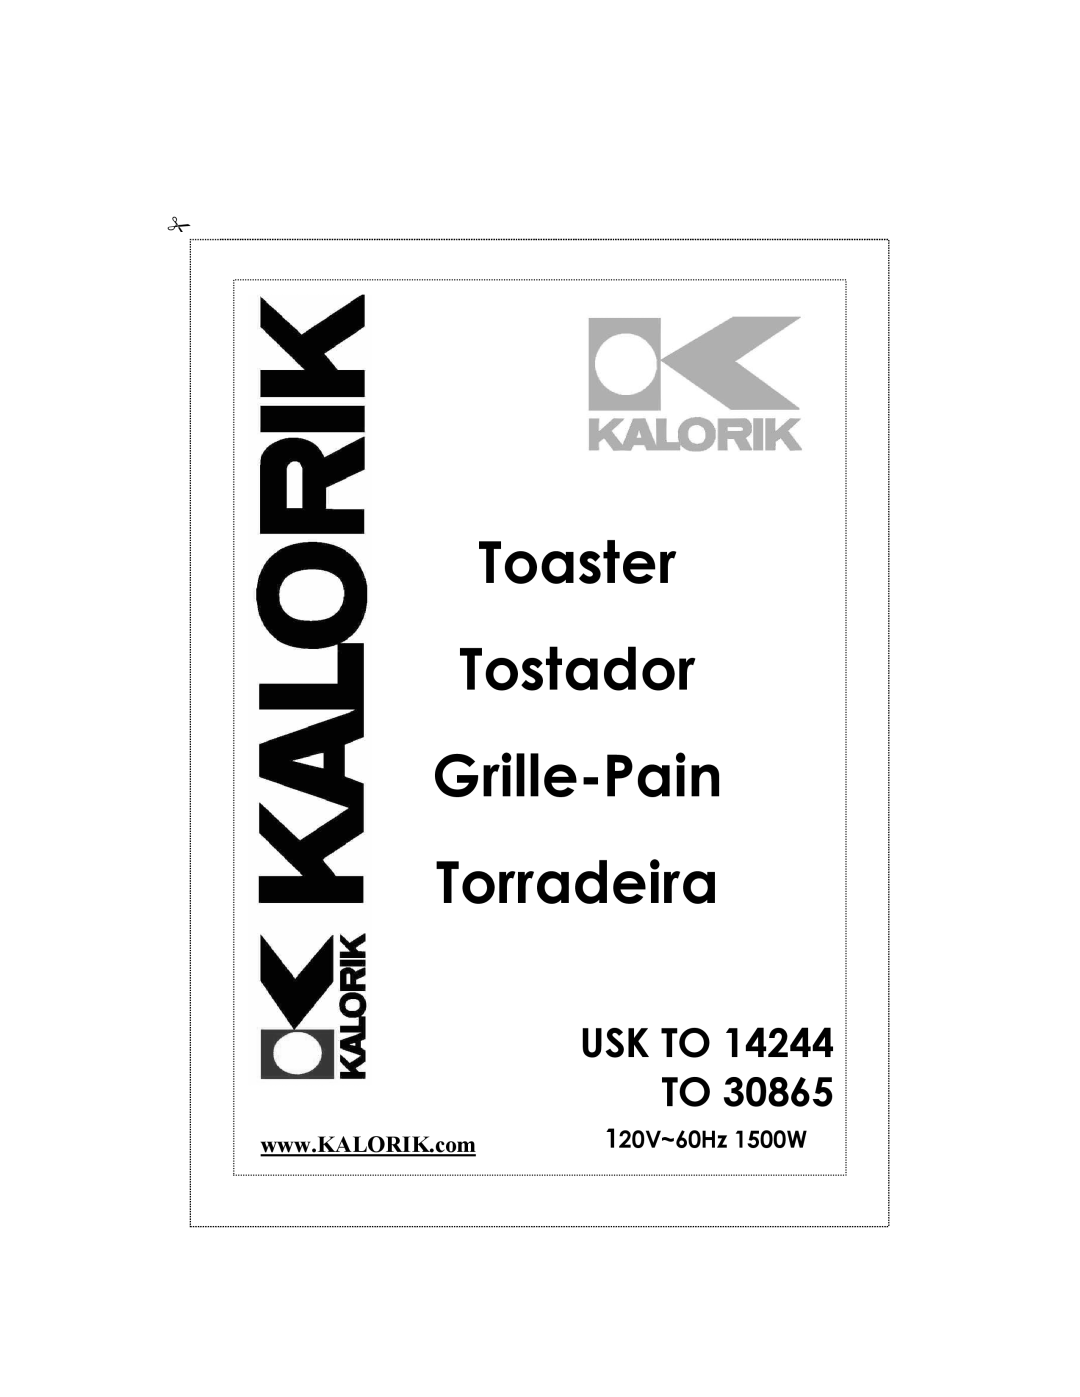 Kalorik USK TO 14244 manual 120V~60Hz 1500W, Toaster Tostador Grille-Pain Torradeira, Usk To 